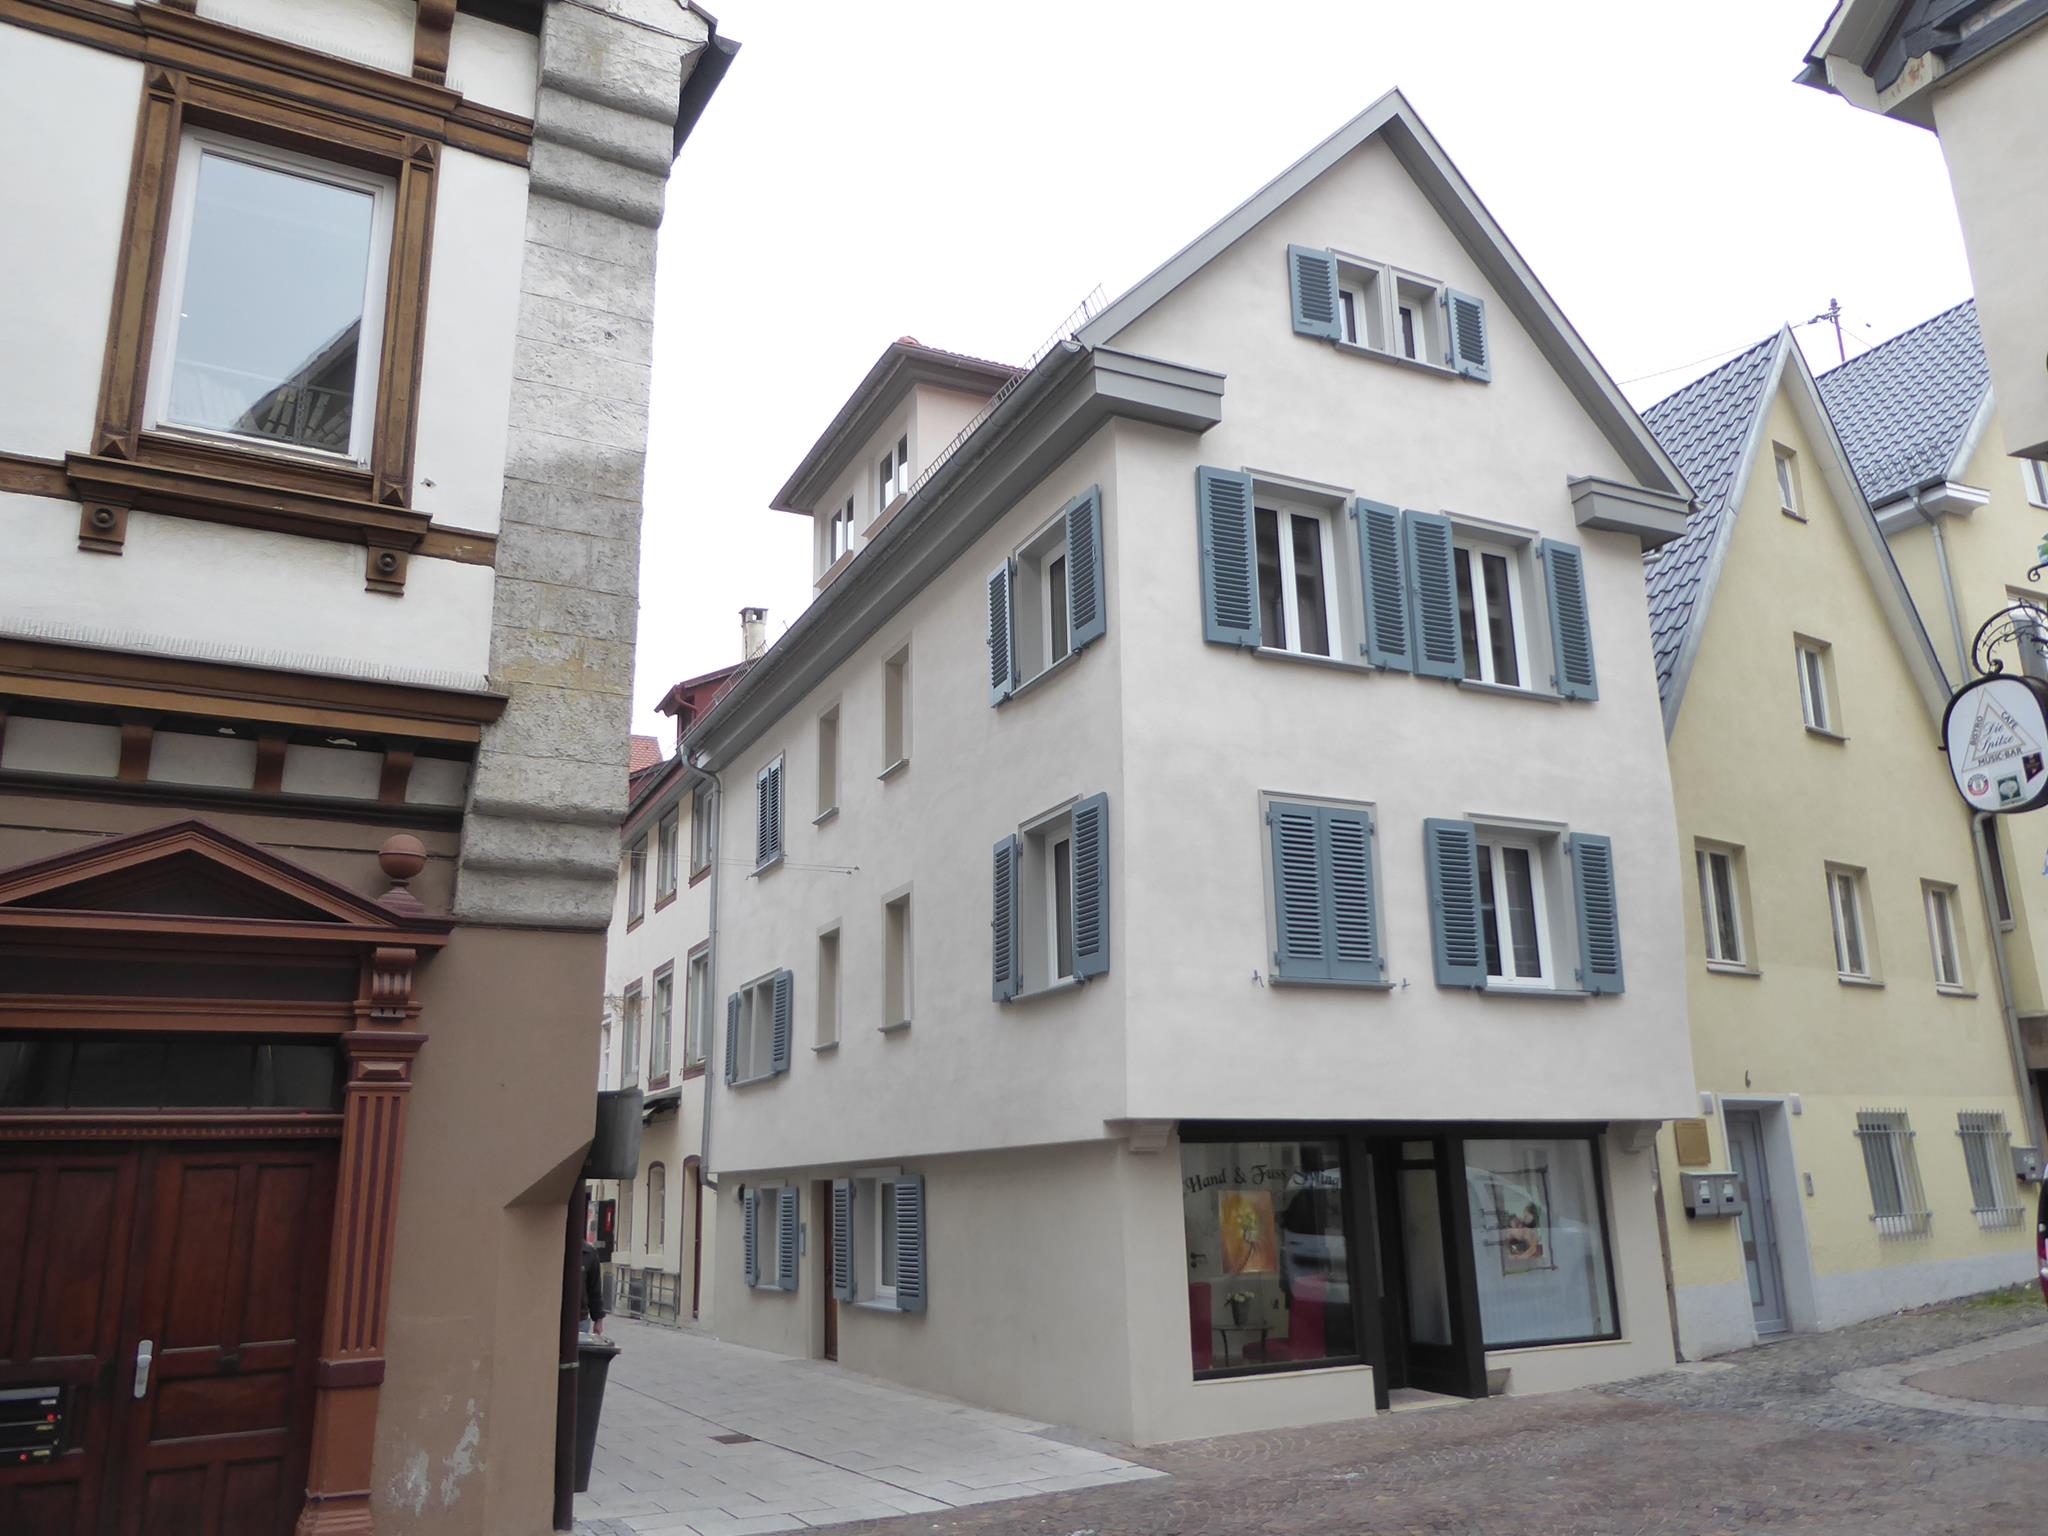 Historisches Gebäude Schubartstraße / Geislingen